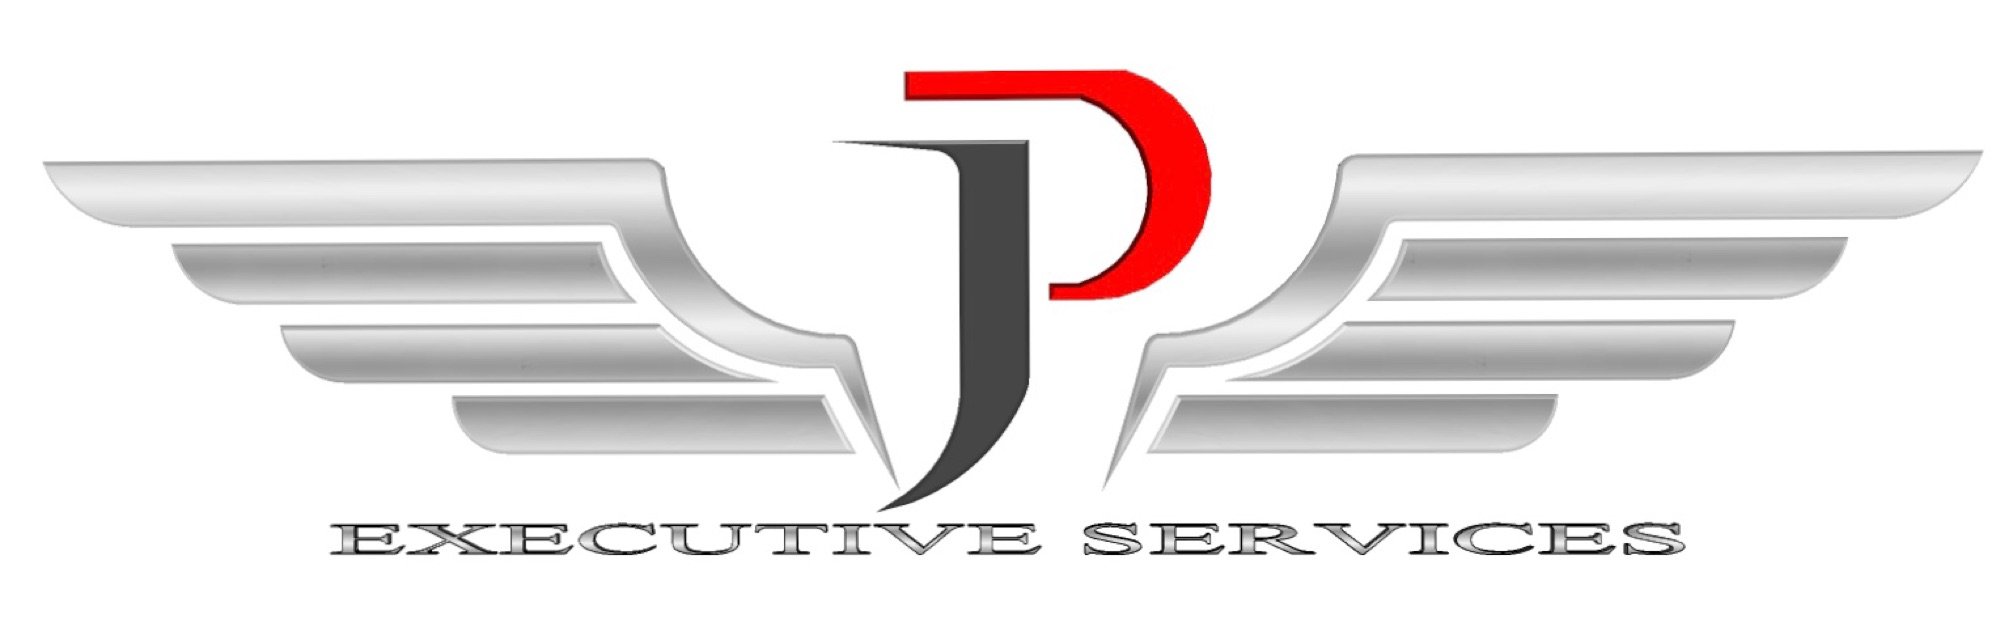 JP Executive Services Logo